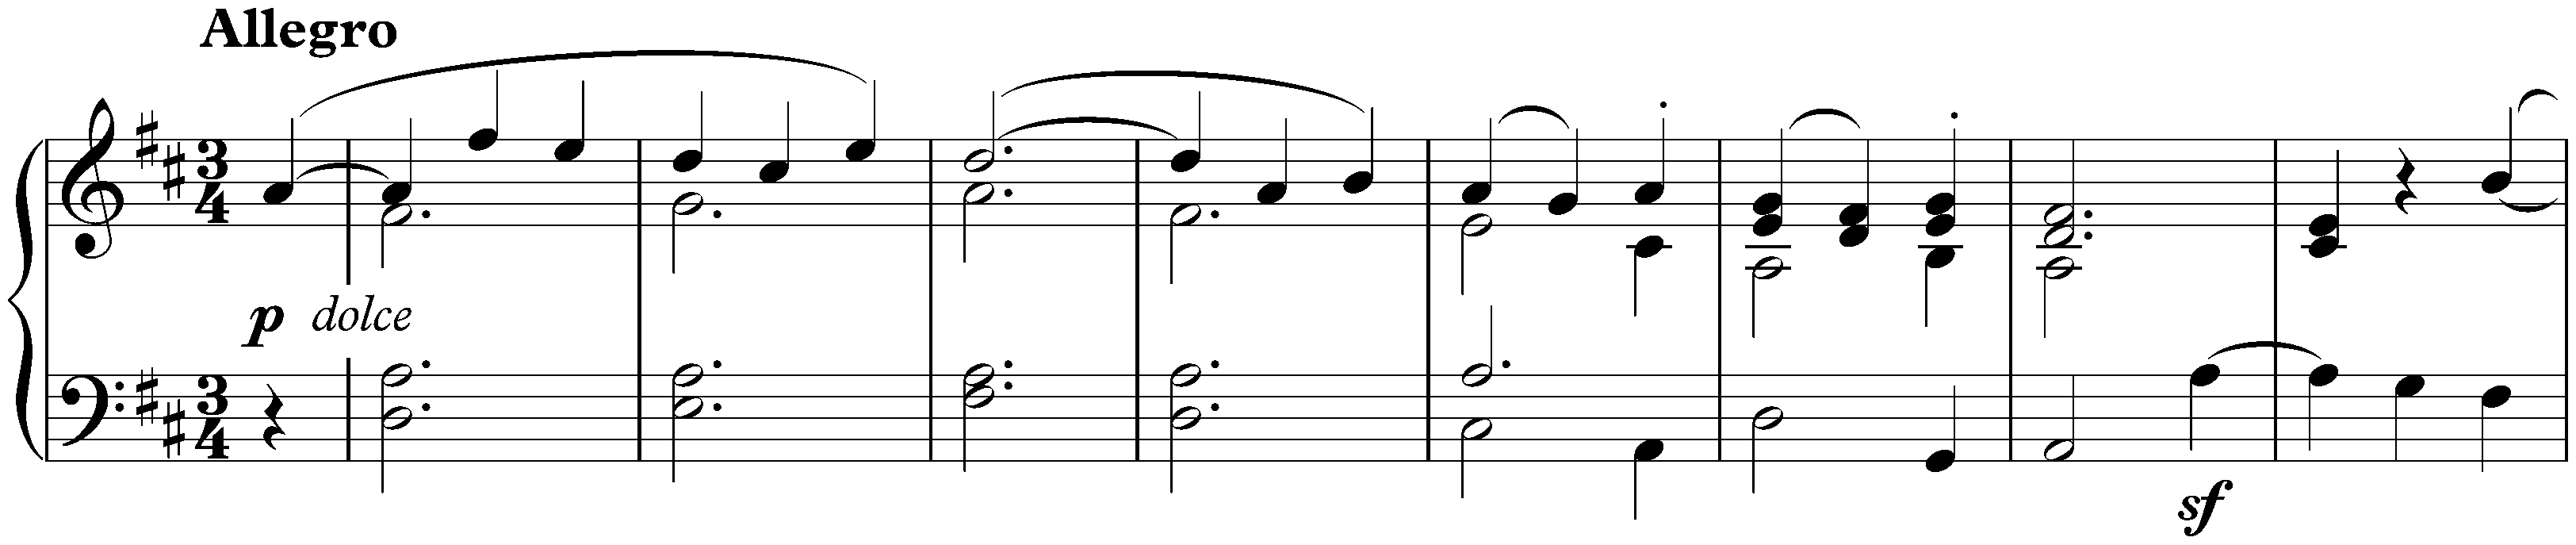 Sonata no. 7 in D major, op. 10 no. 3; 3. Menuetto: Allegro